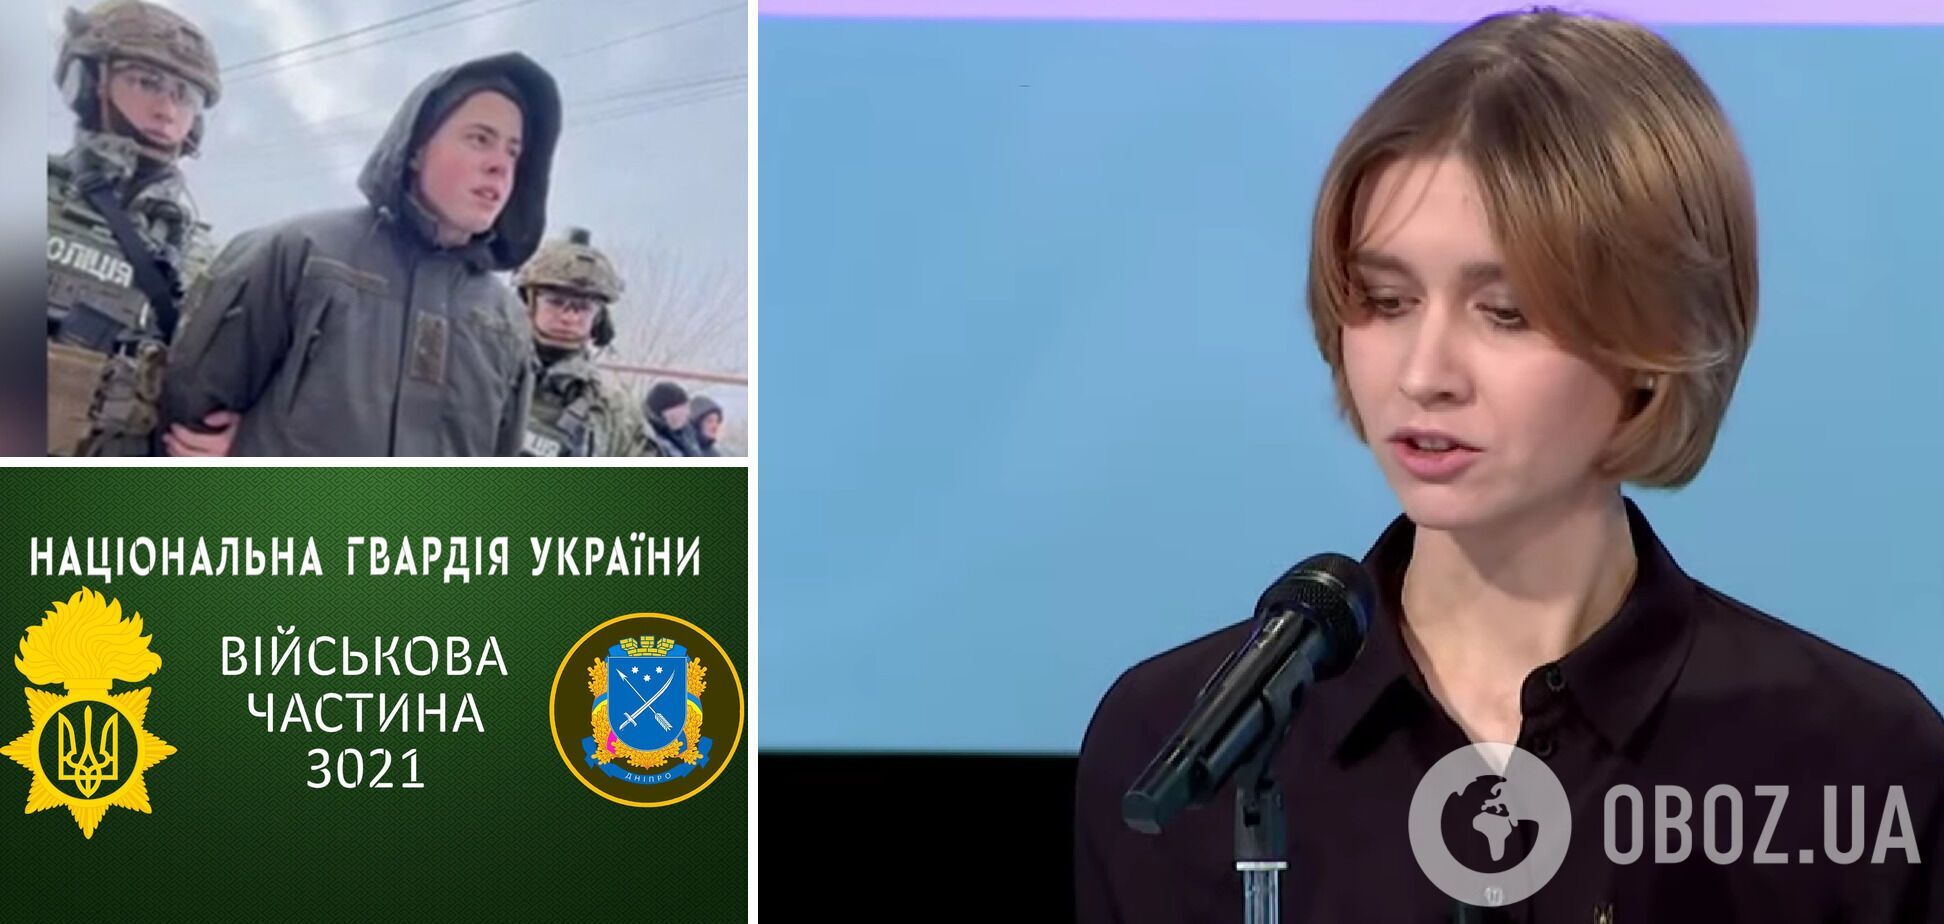 Олена Липовенко розповіла про ситуацію у військовій частині 3021 НГУ